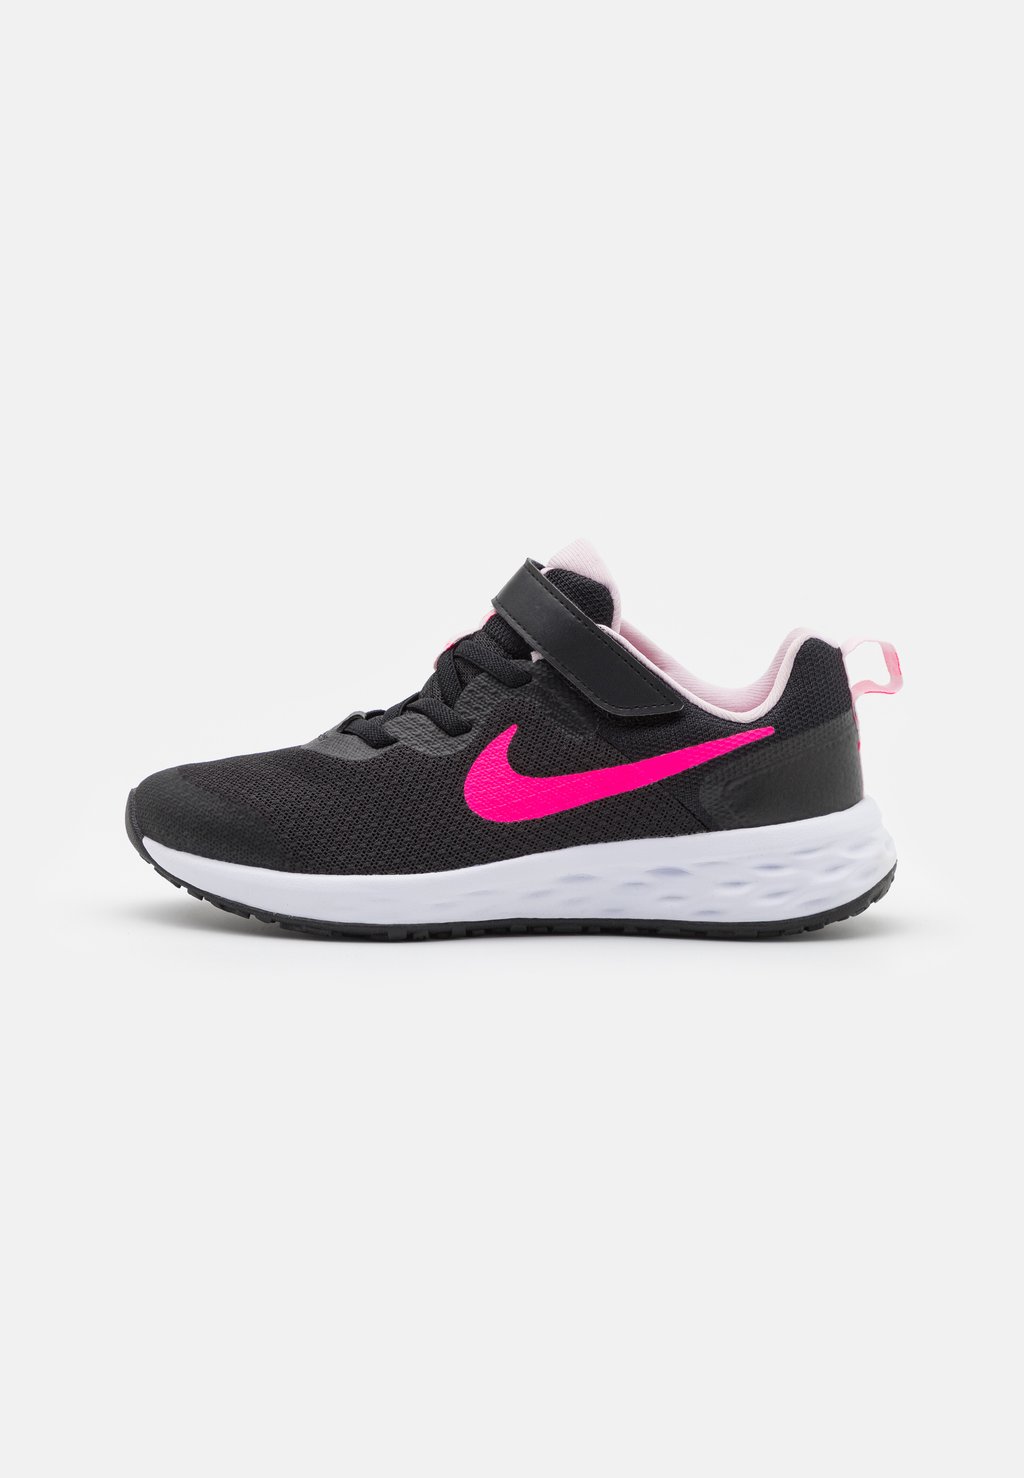 Кроссовки нейтрального цвета NIKE REVOLUTION 6 (PSV) Nike, цвет black/hyper pink/pink foam цена и фото